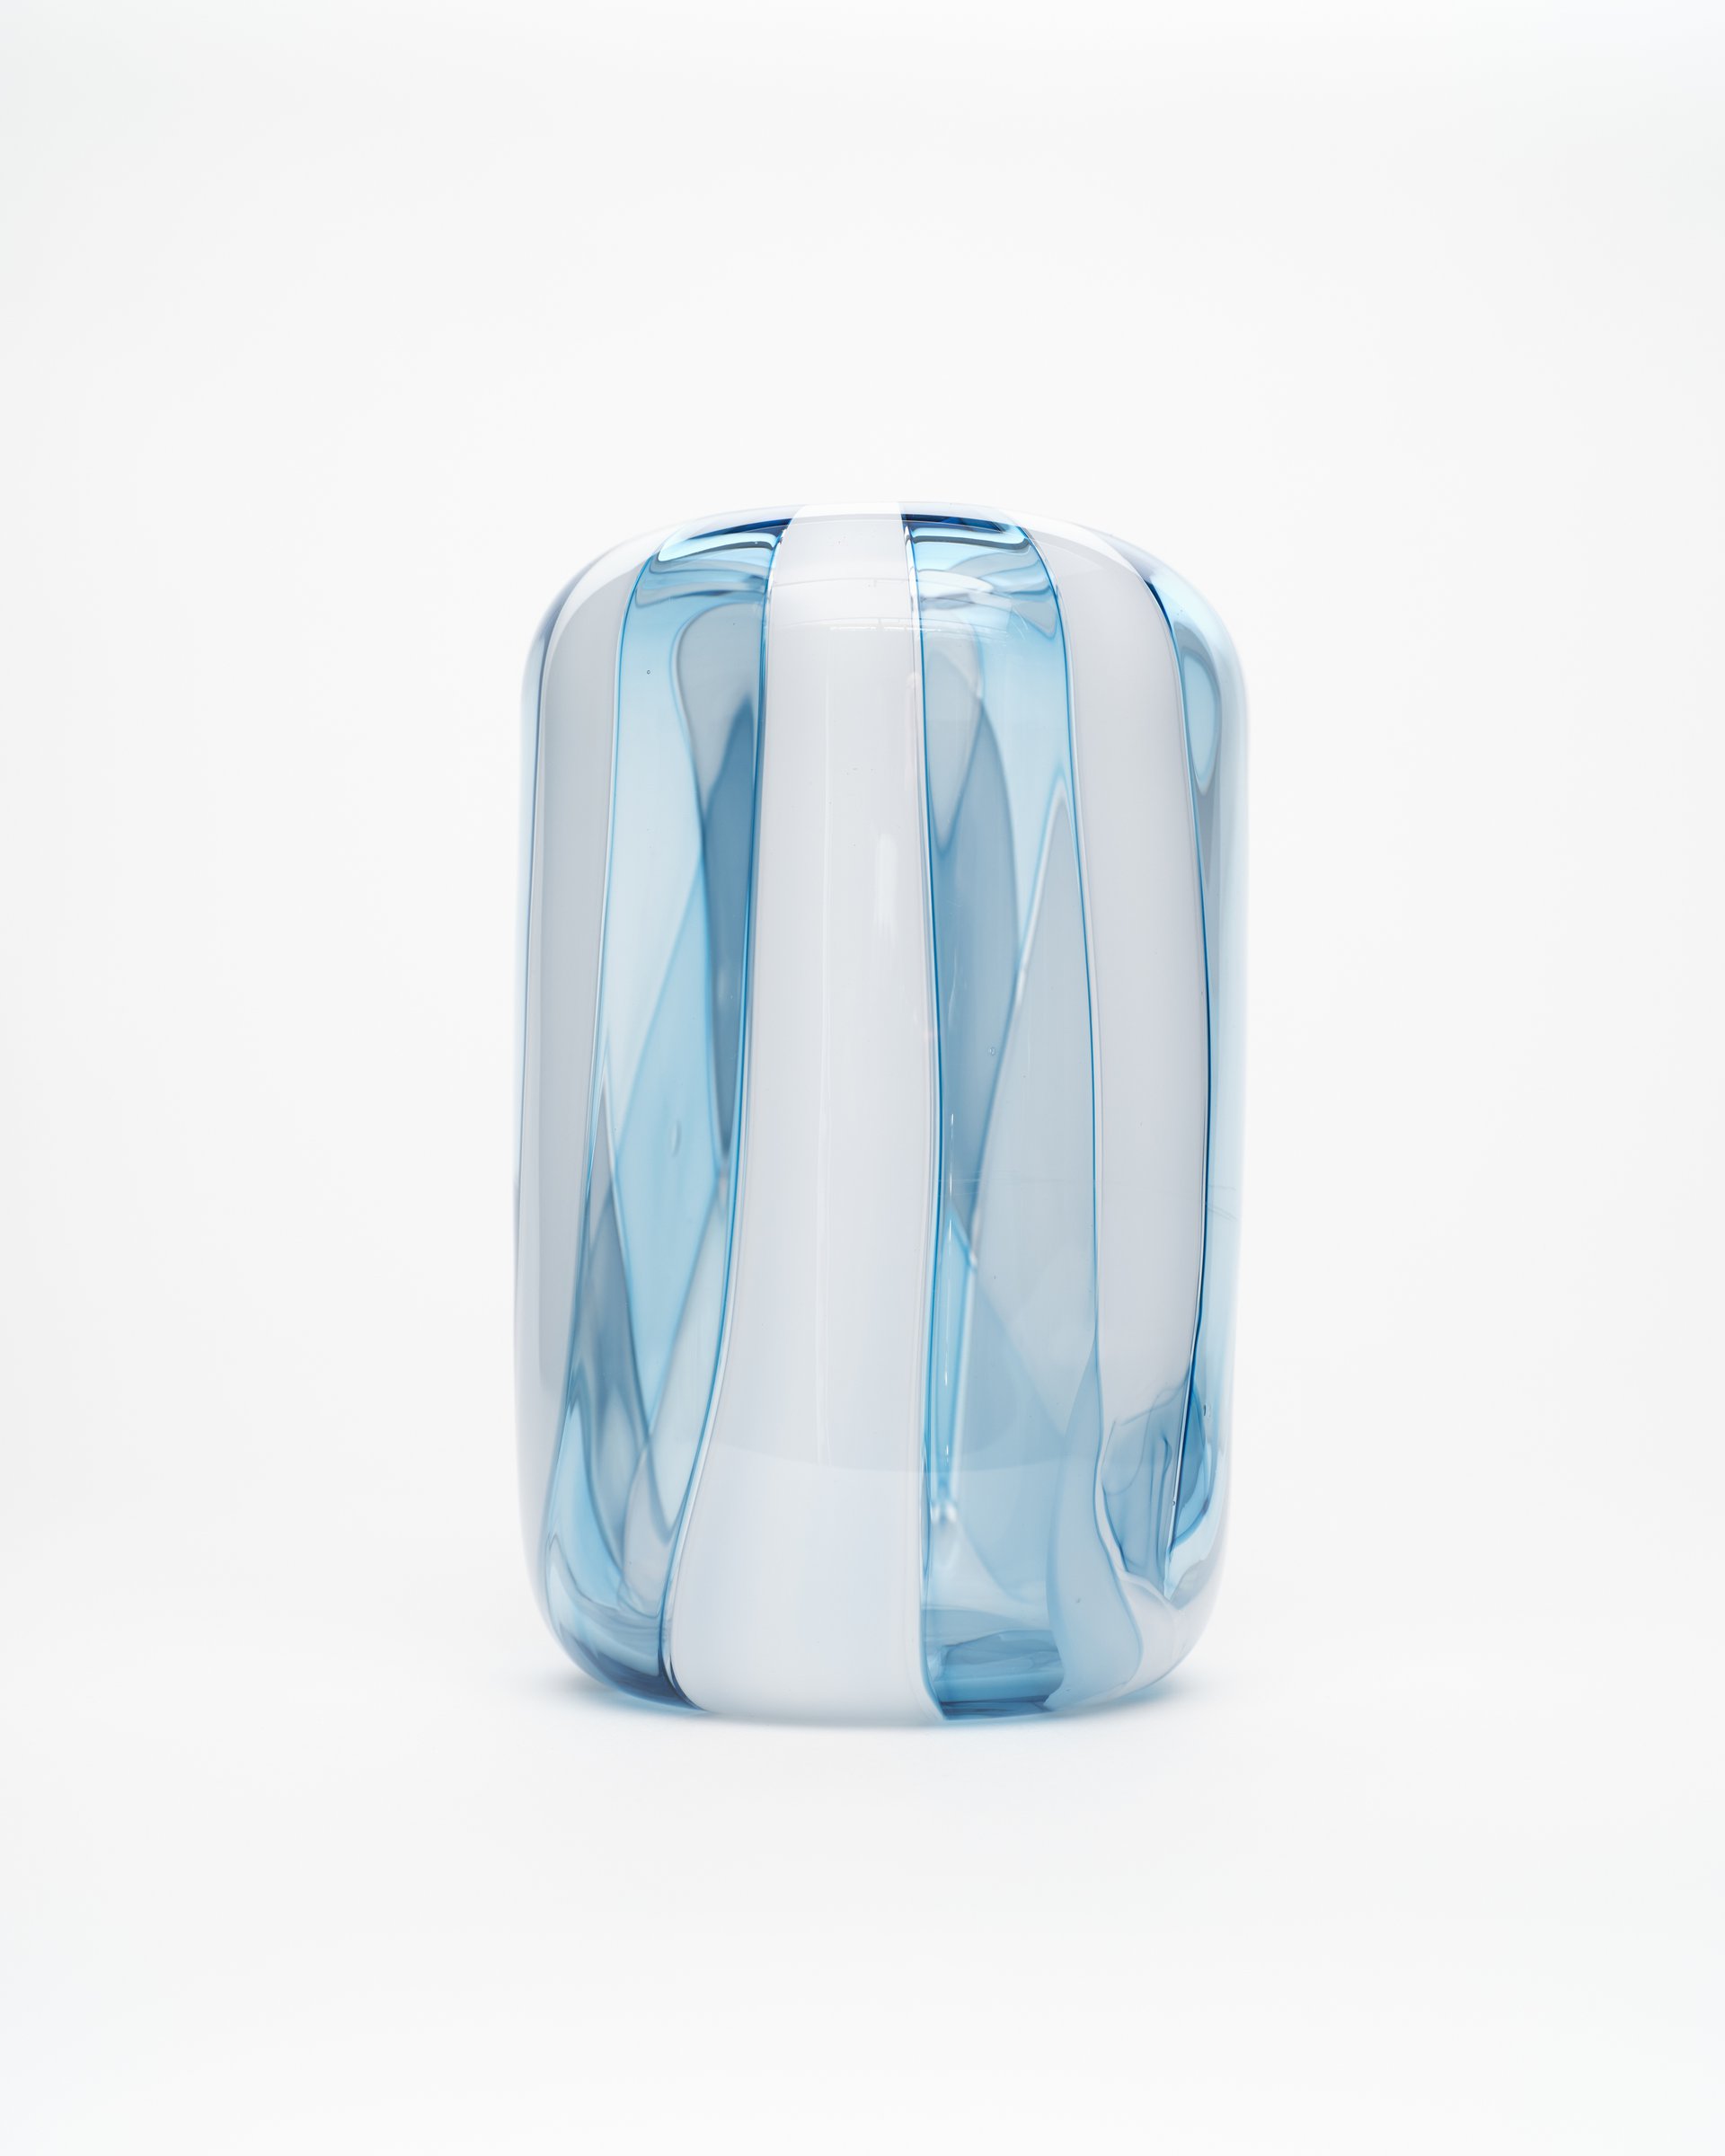 Blue Ice Vase 5